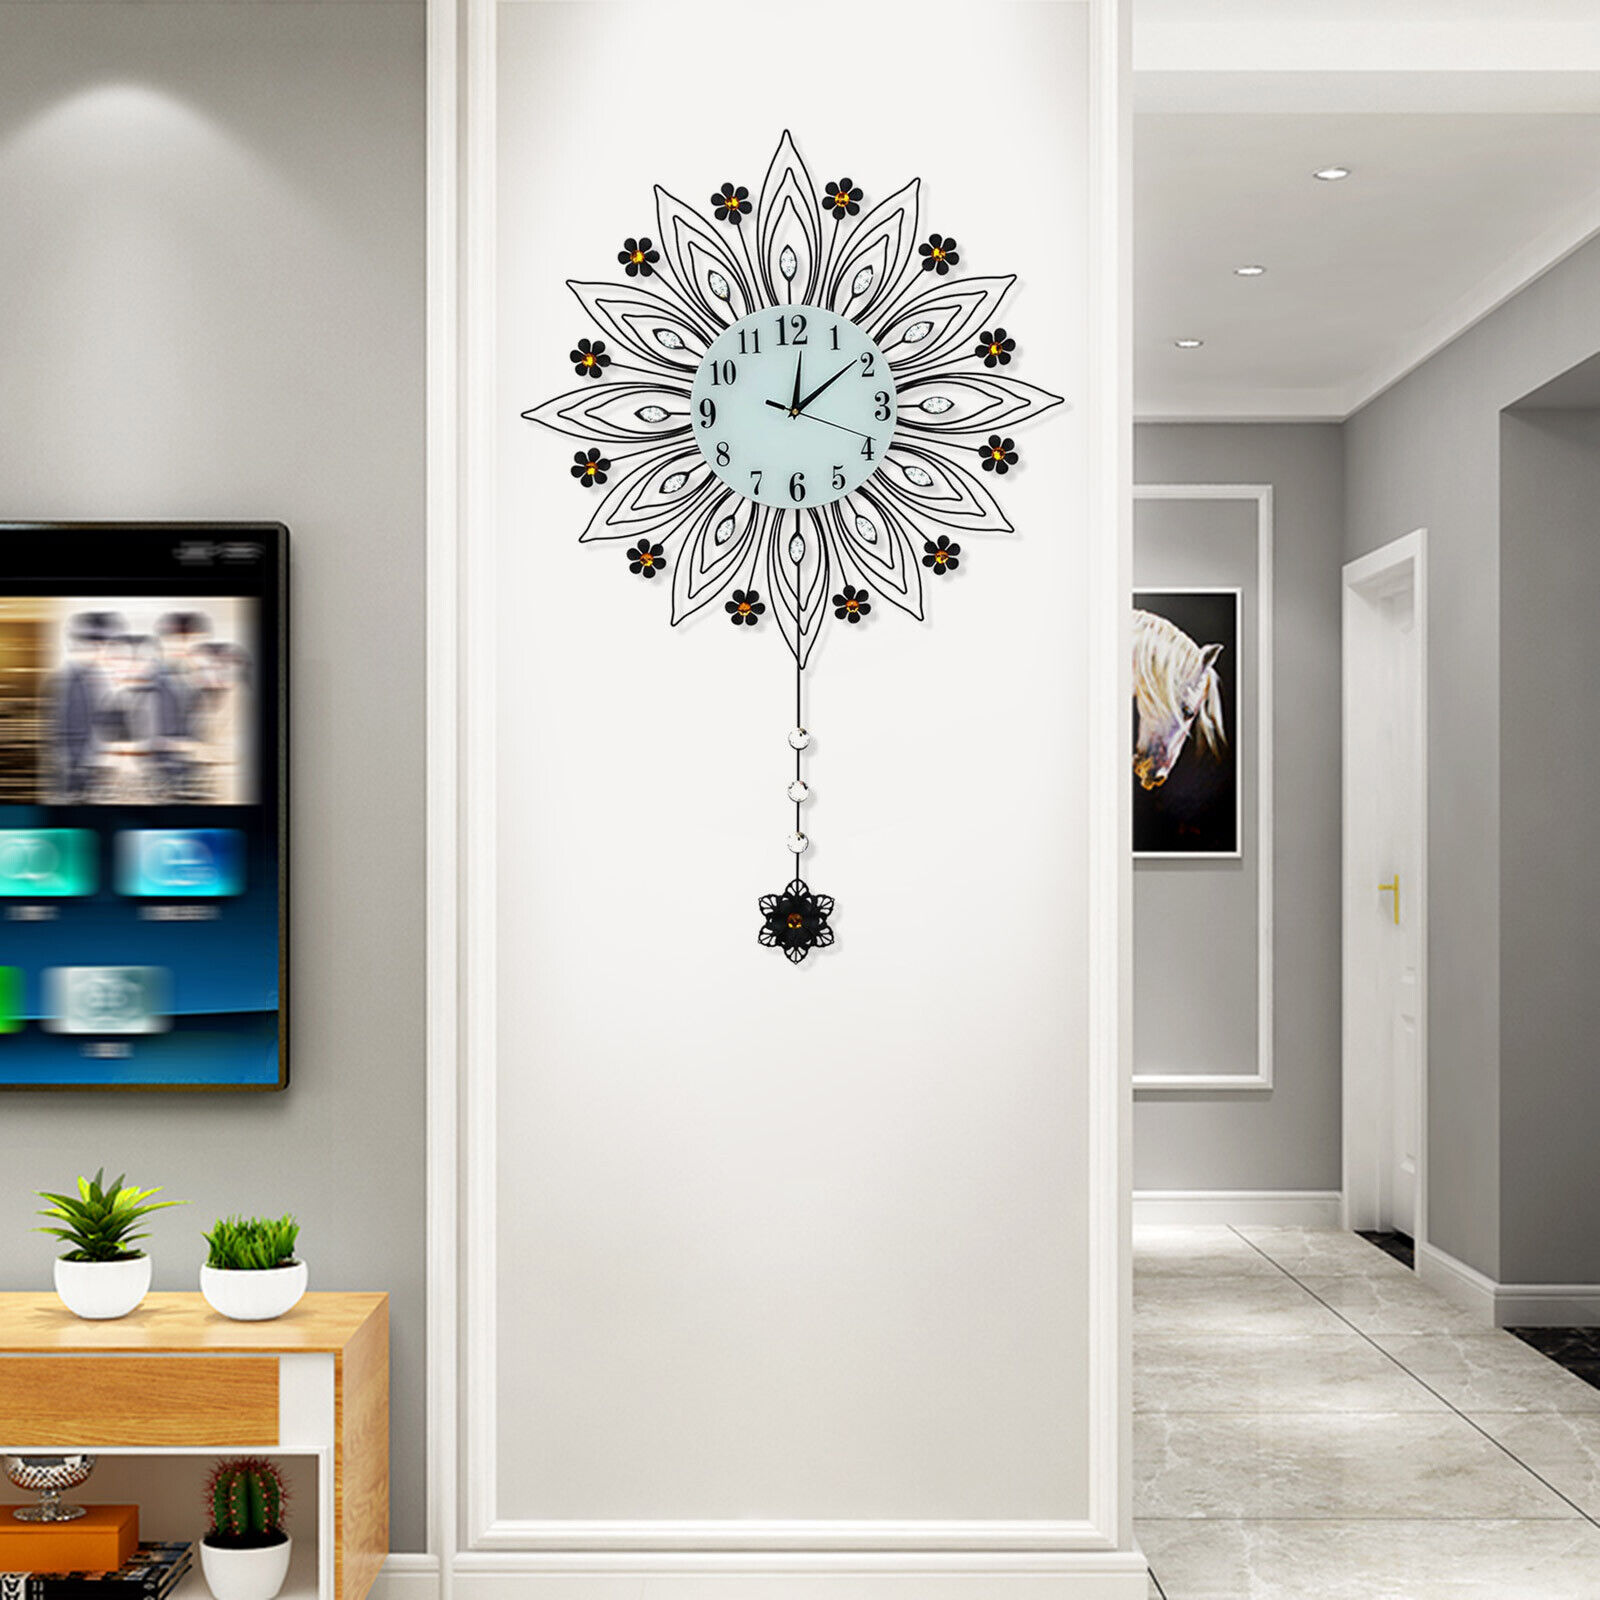 90x64cm Pendulum Clock Flower Shaped Wall Mount Modern Home Decor Art Clock